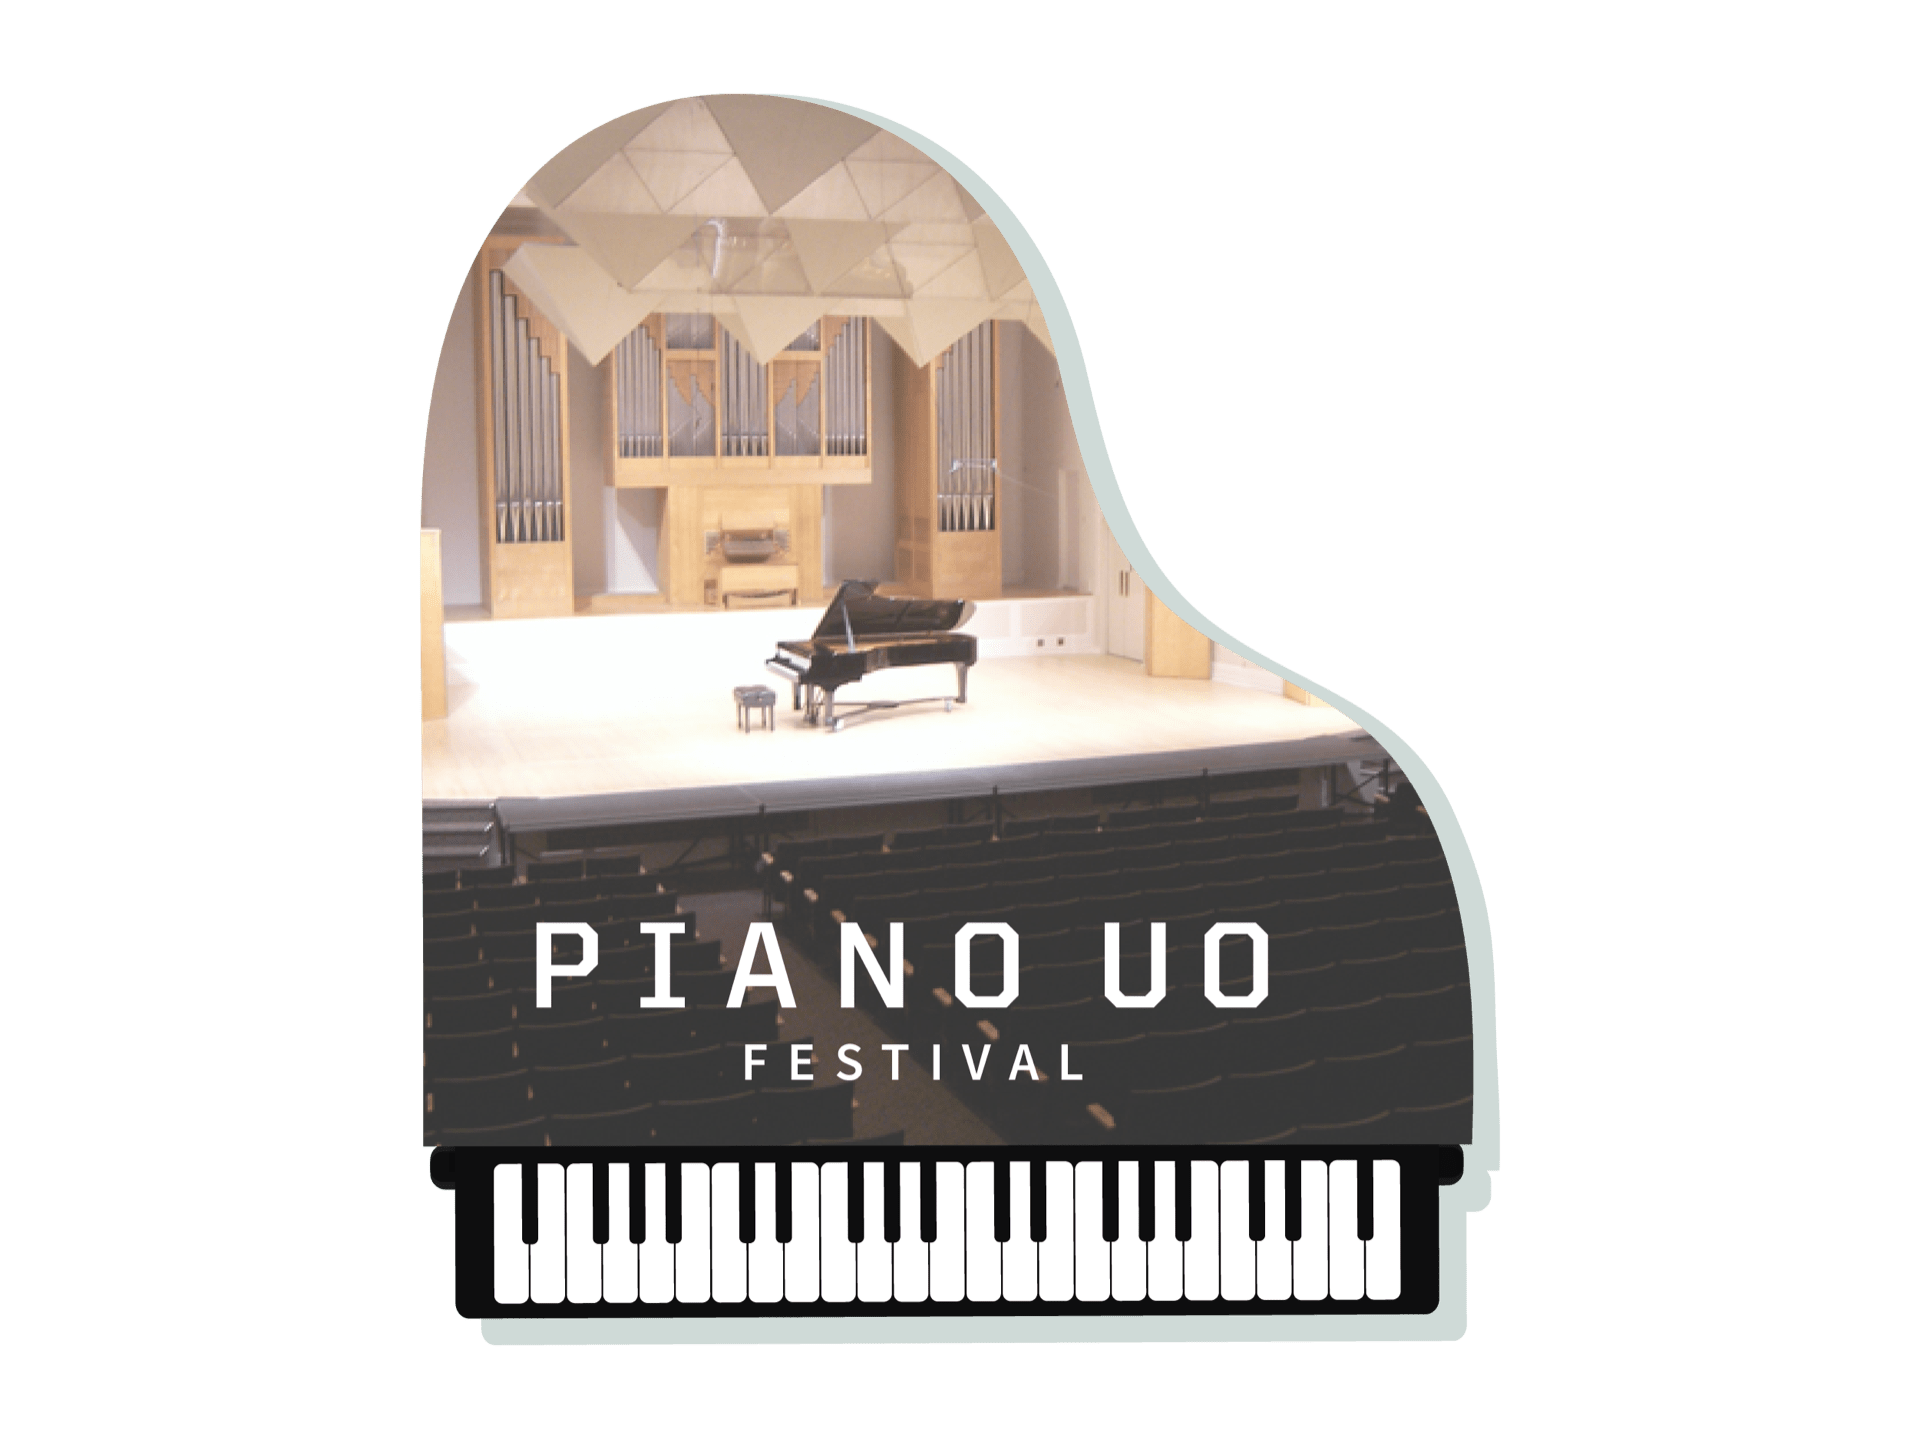 Piano UO Festival